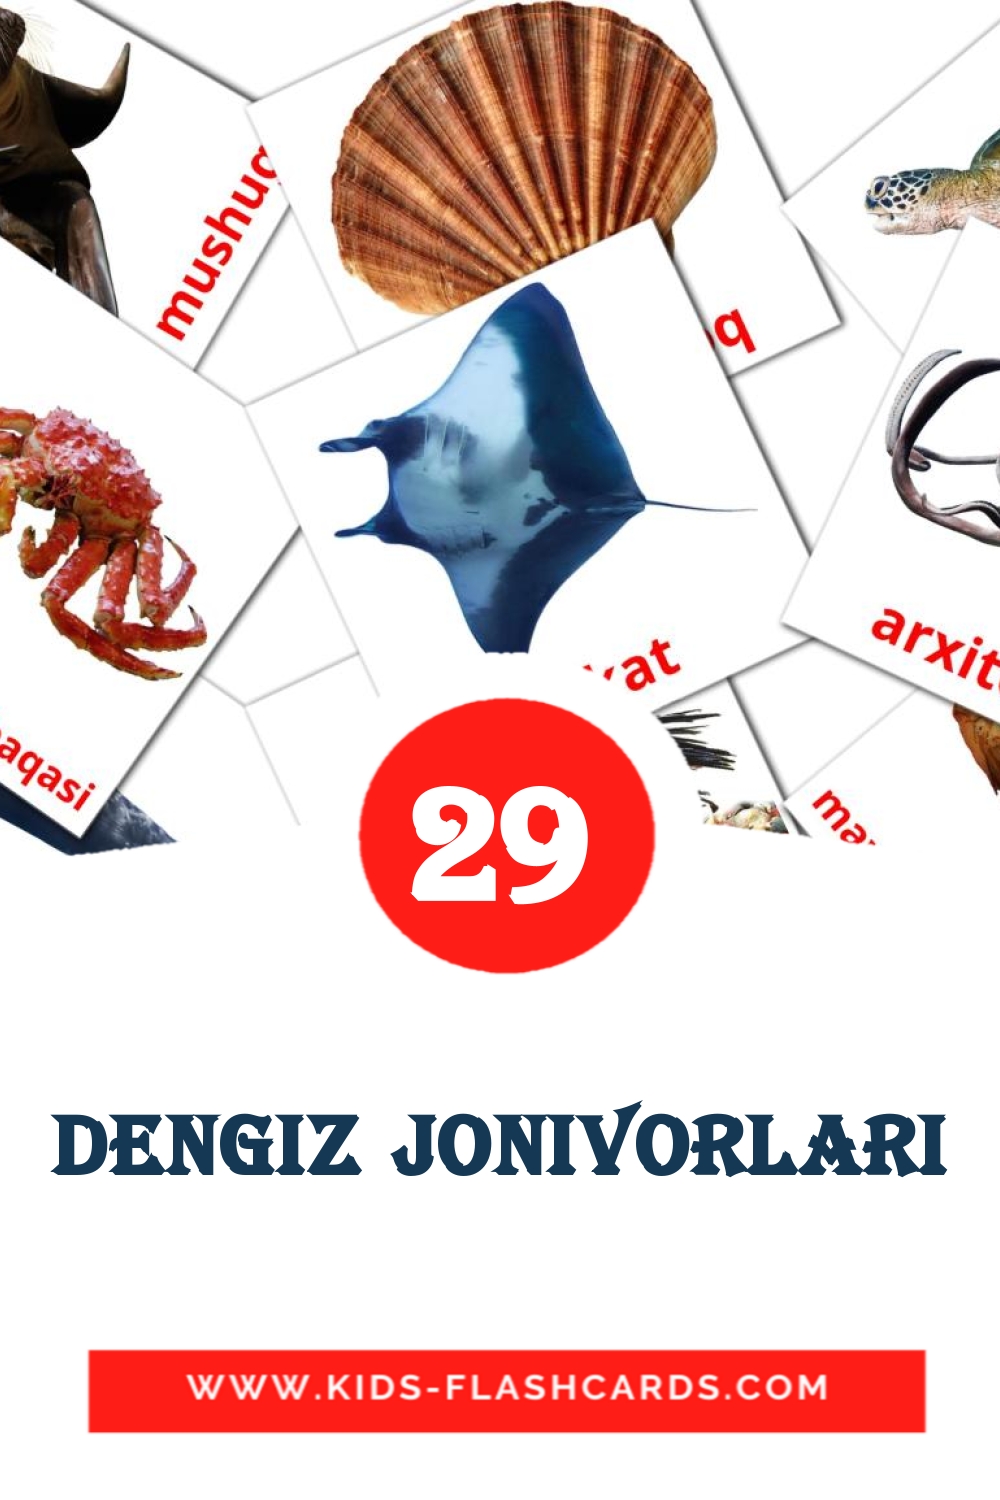 Dengiz jonivorlari на узбекском для Детского Сада (29 карточек)